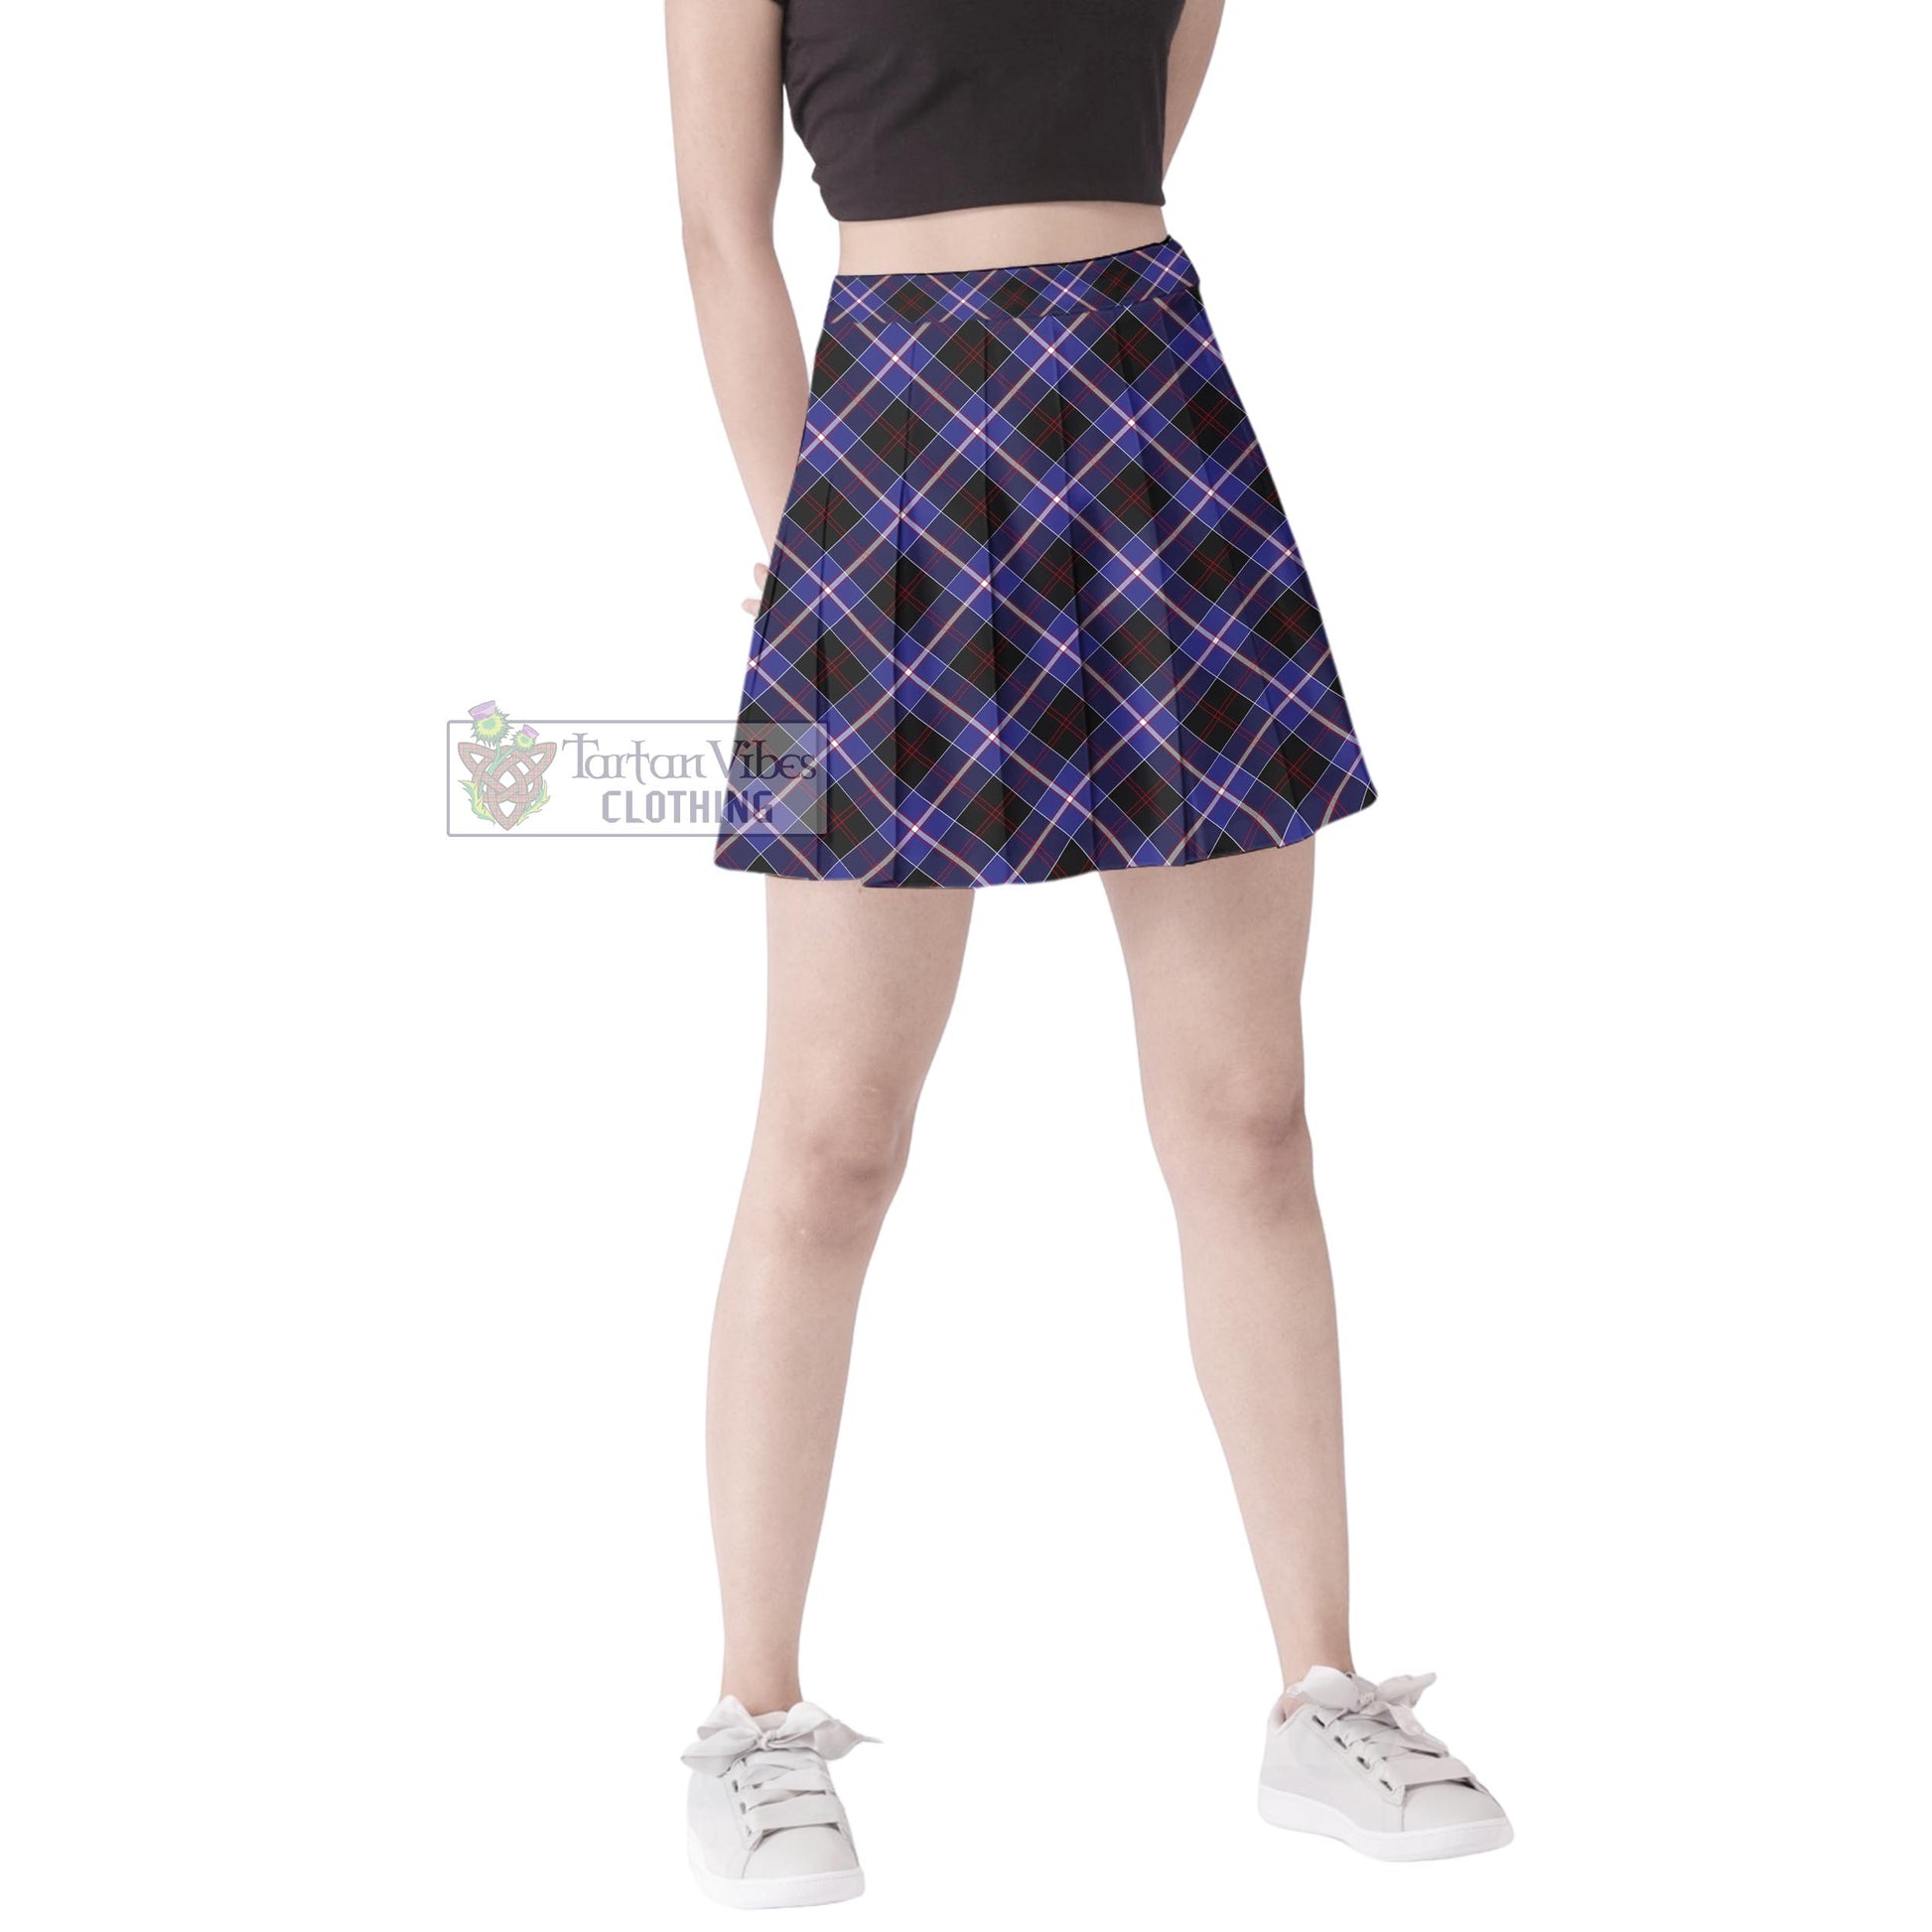 Tartan Vibes Clothing Dunlop Modern Tartan Women's Plated Mini Skirt